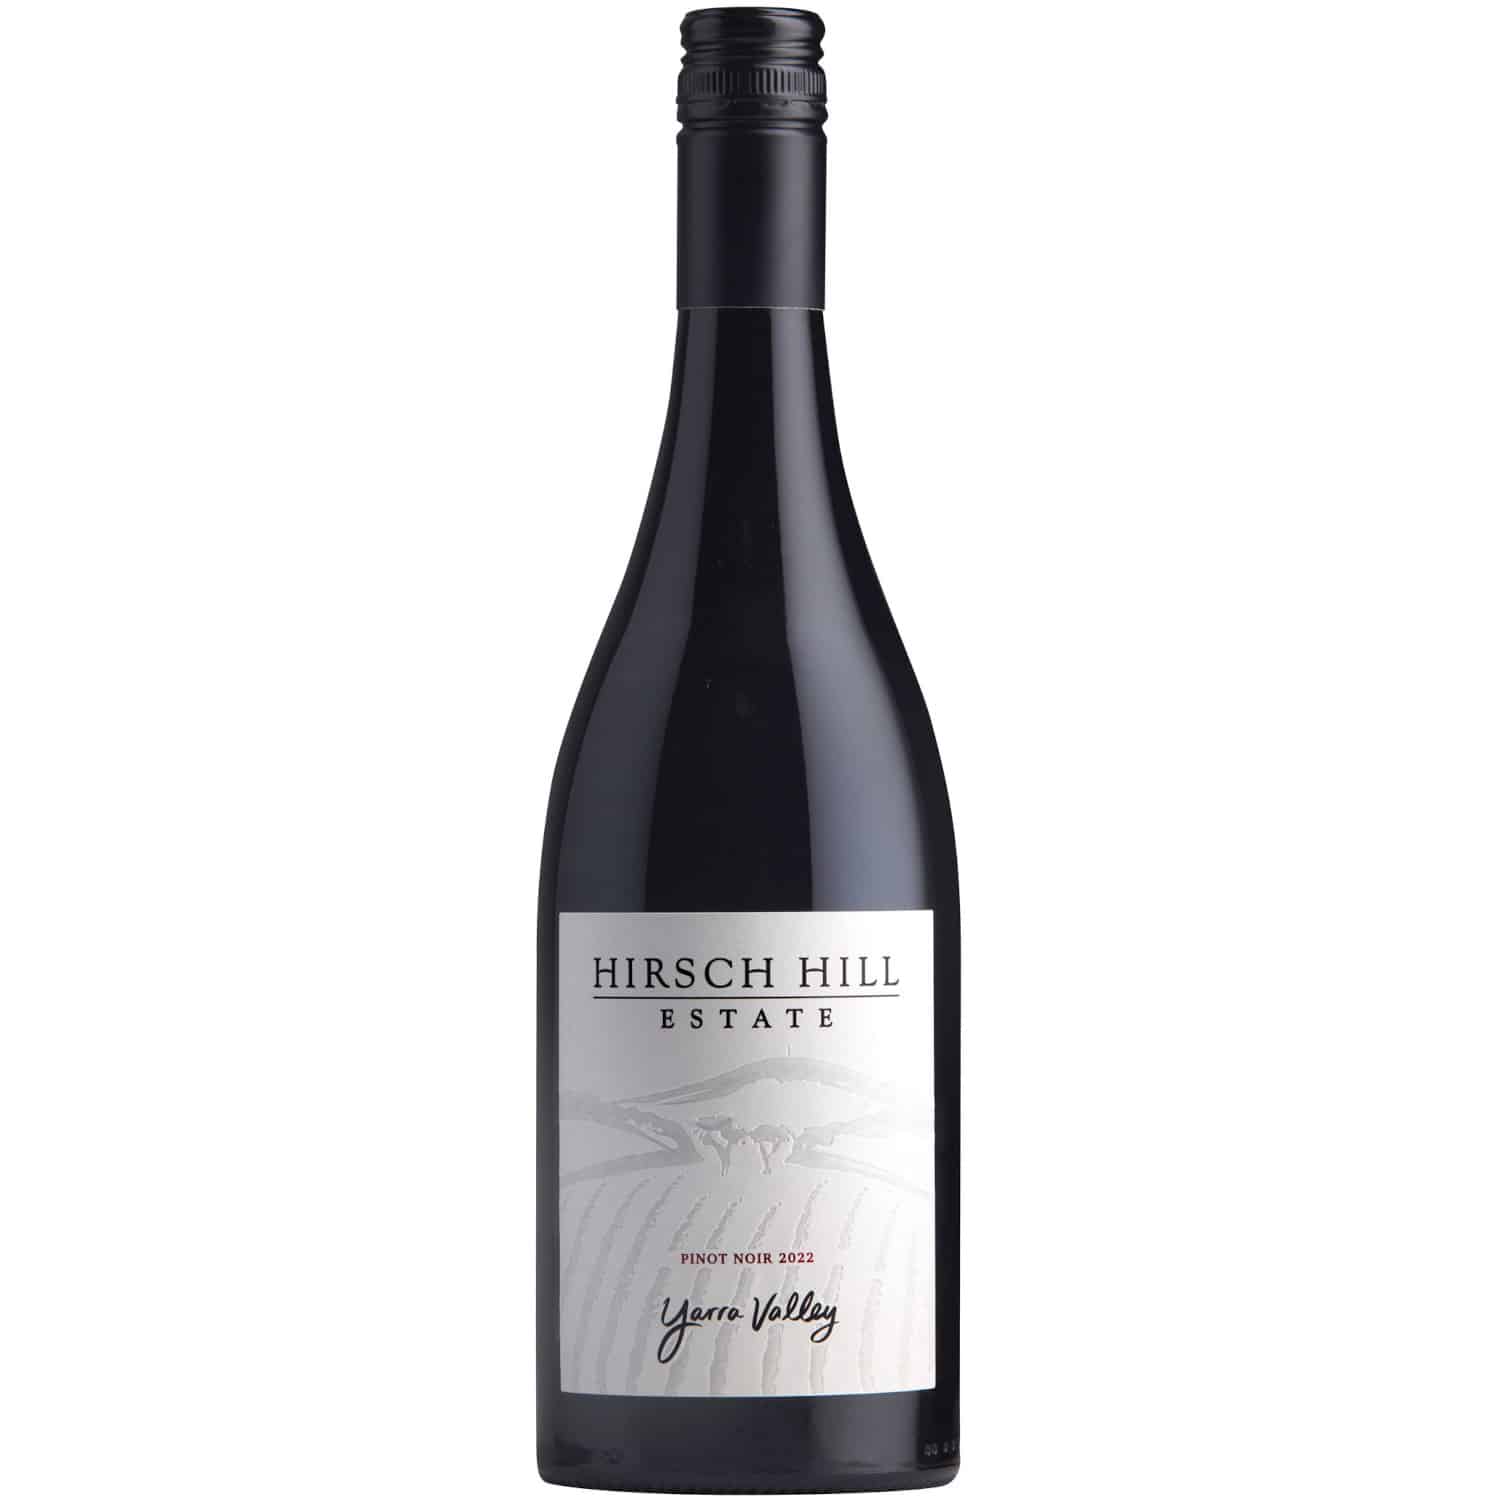 Hirsch Hill Estate Pinot Noir 2022